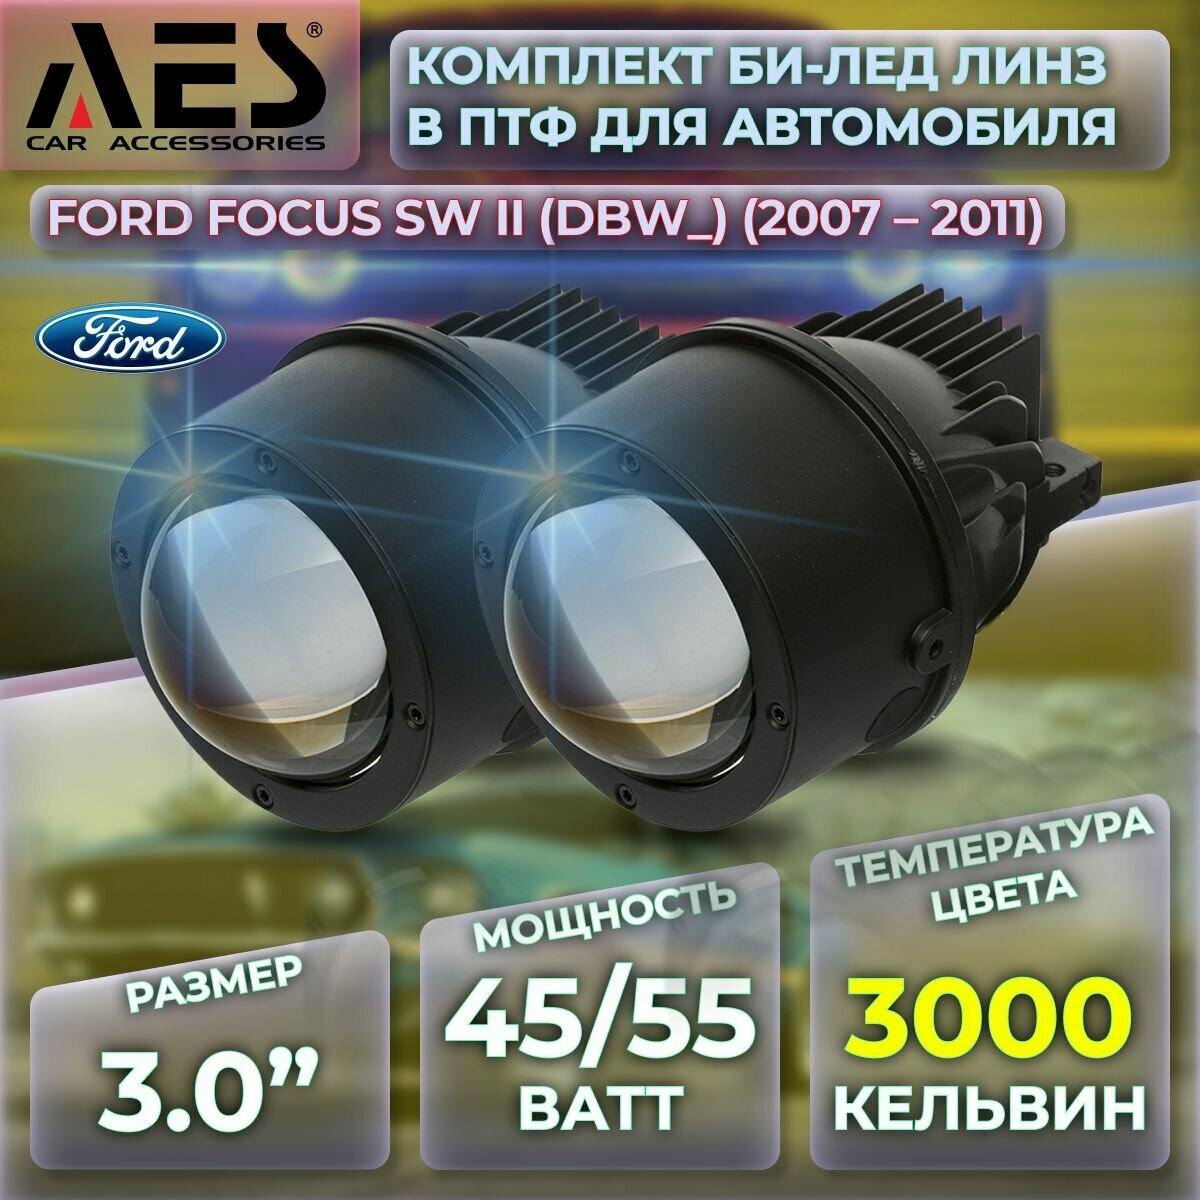 Комплект Би-лед линз в ПТФ для Ford Focus универсал II (DBW) (2007-2011) Q8 Foglight Bi-LED Laser 3000K (2 модуля 2 кронштейна)